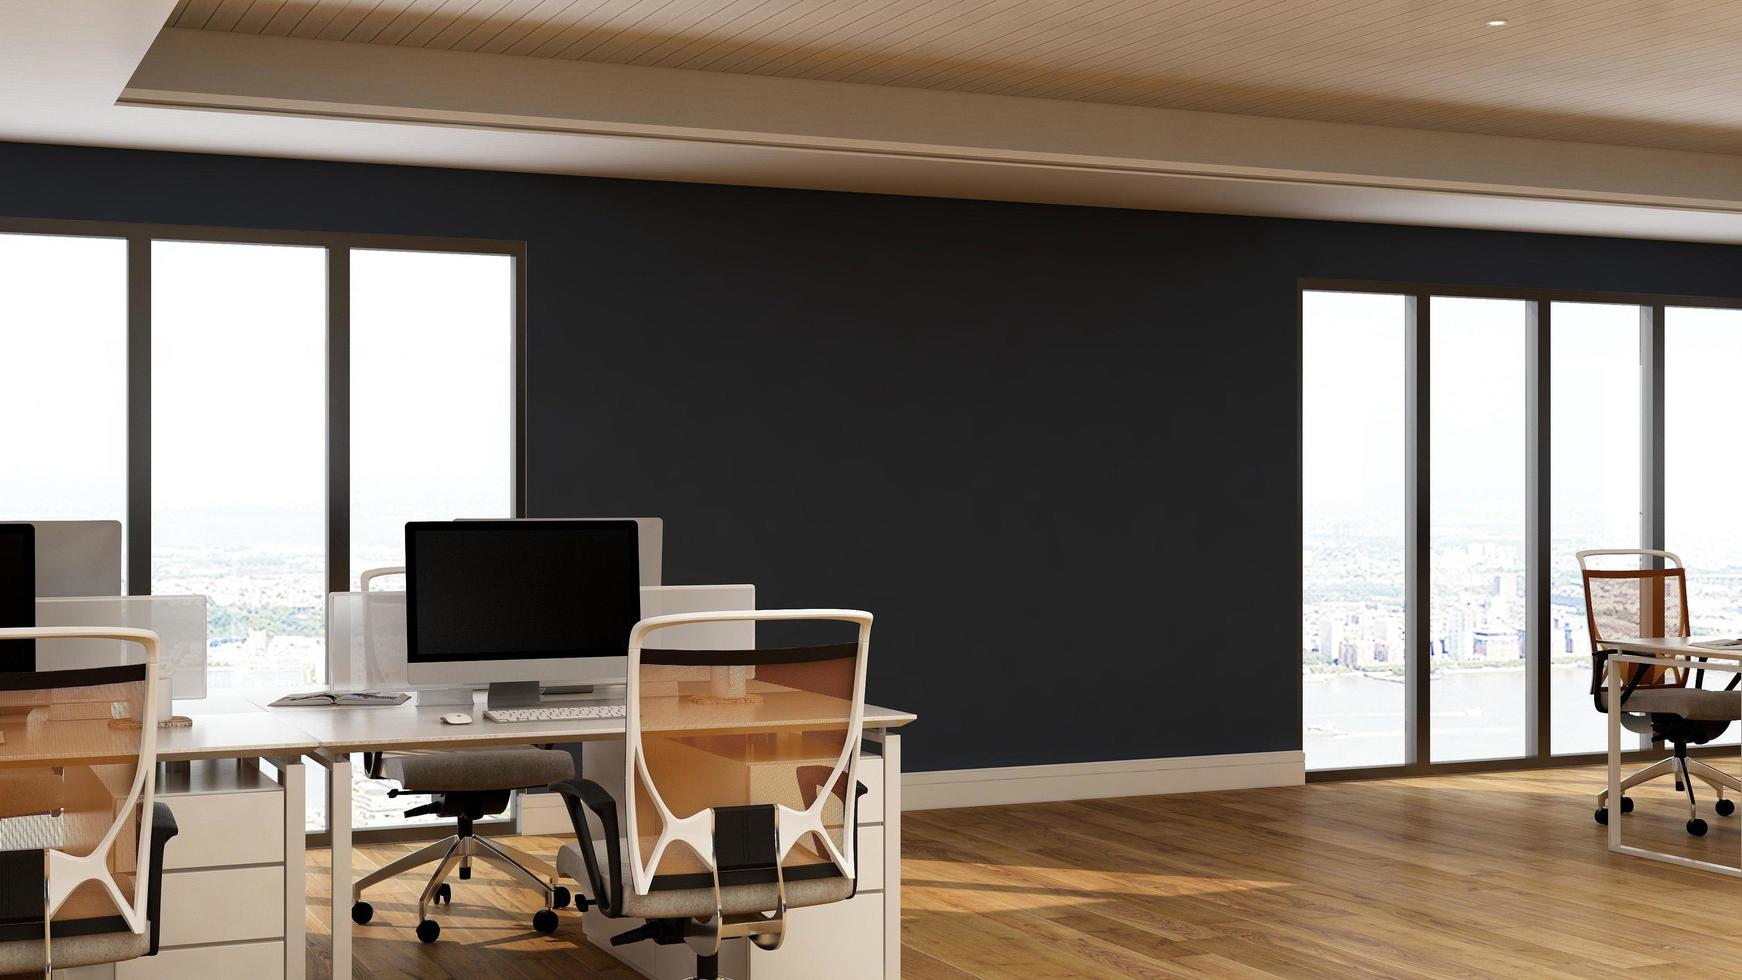 maquete minimalista moderna do espaço de trabalho do escritório de renderização 3D foto